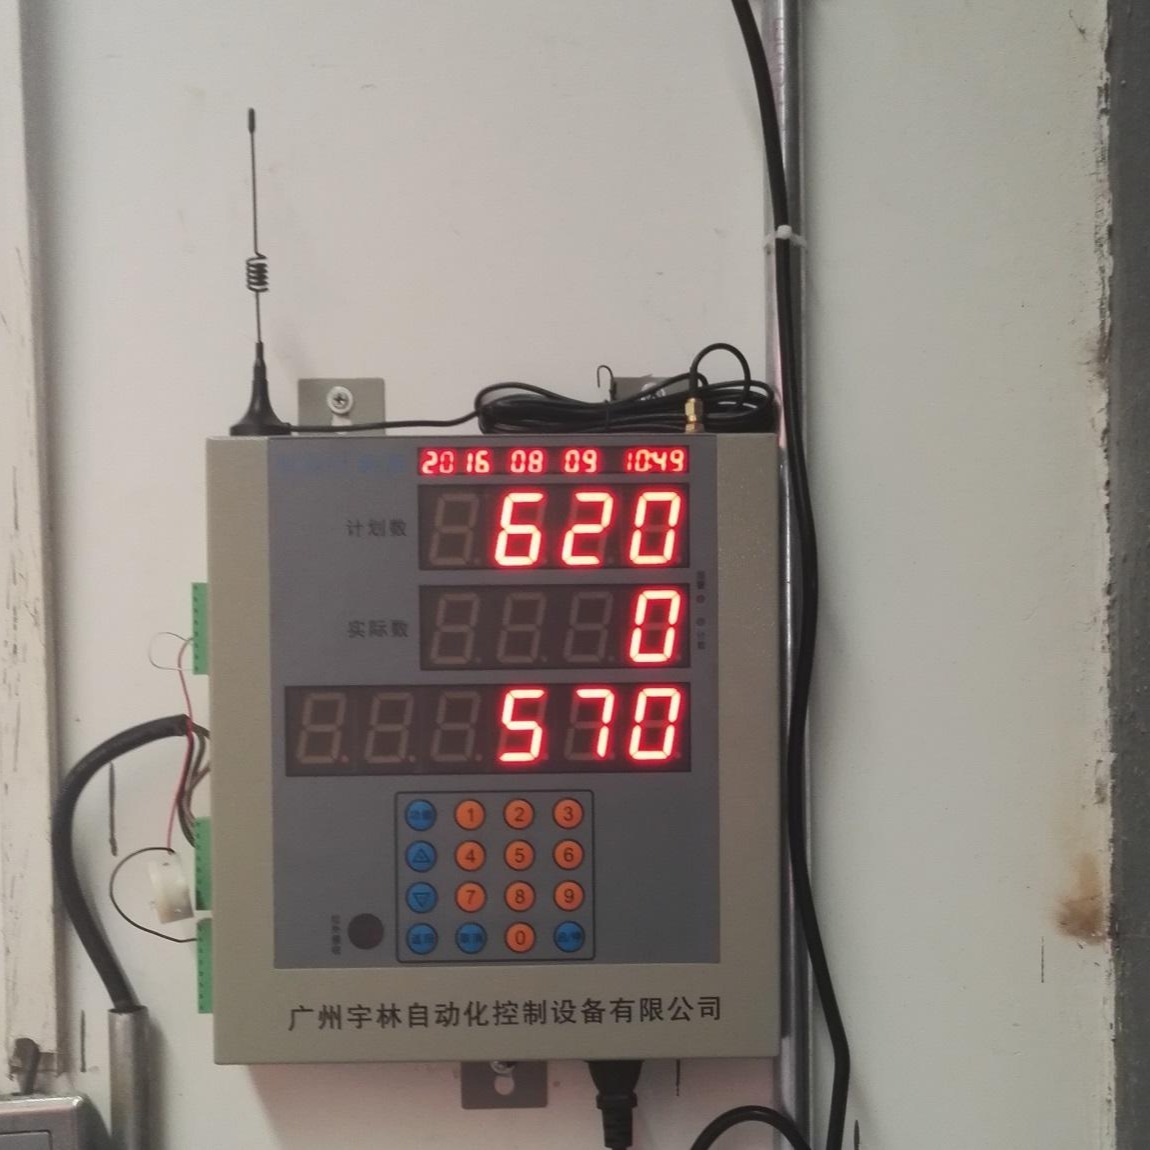 广州宇林YL-PC15D水泥包装生产线专用自动化装车计数管理系统